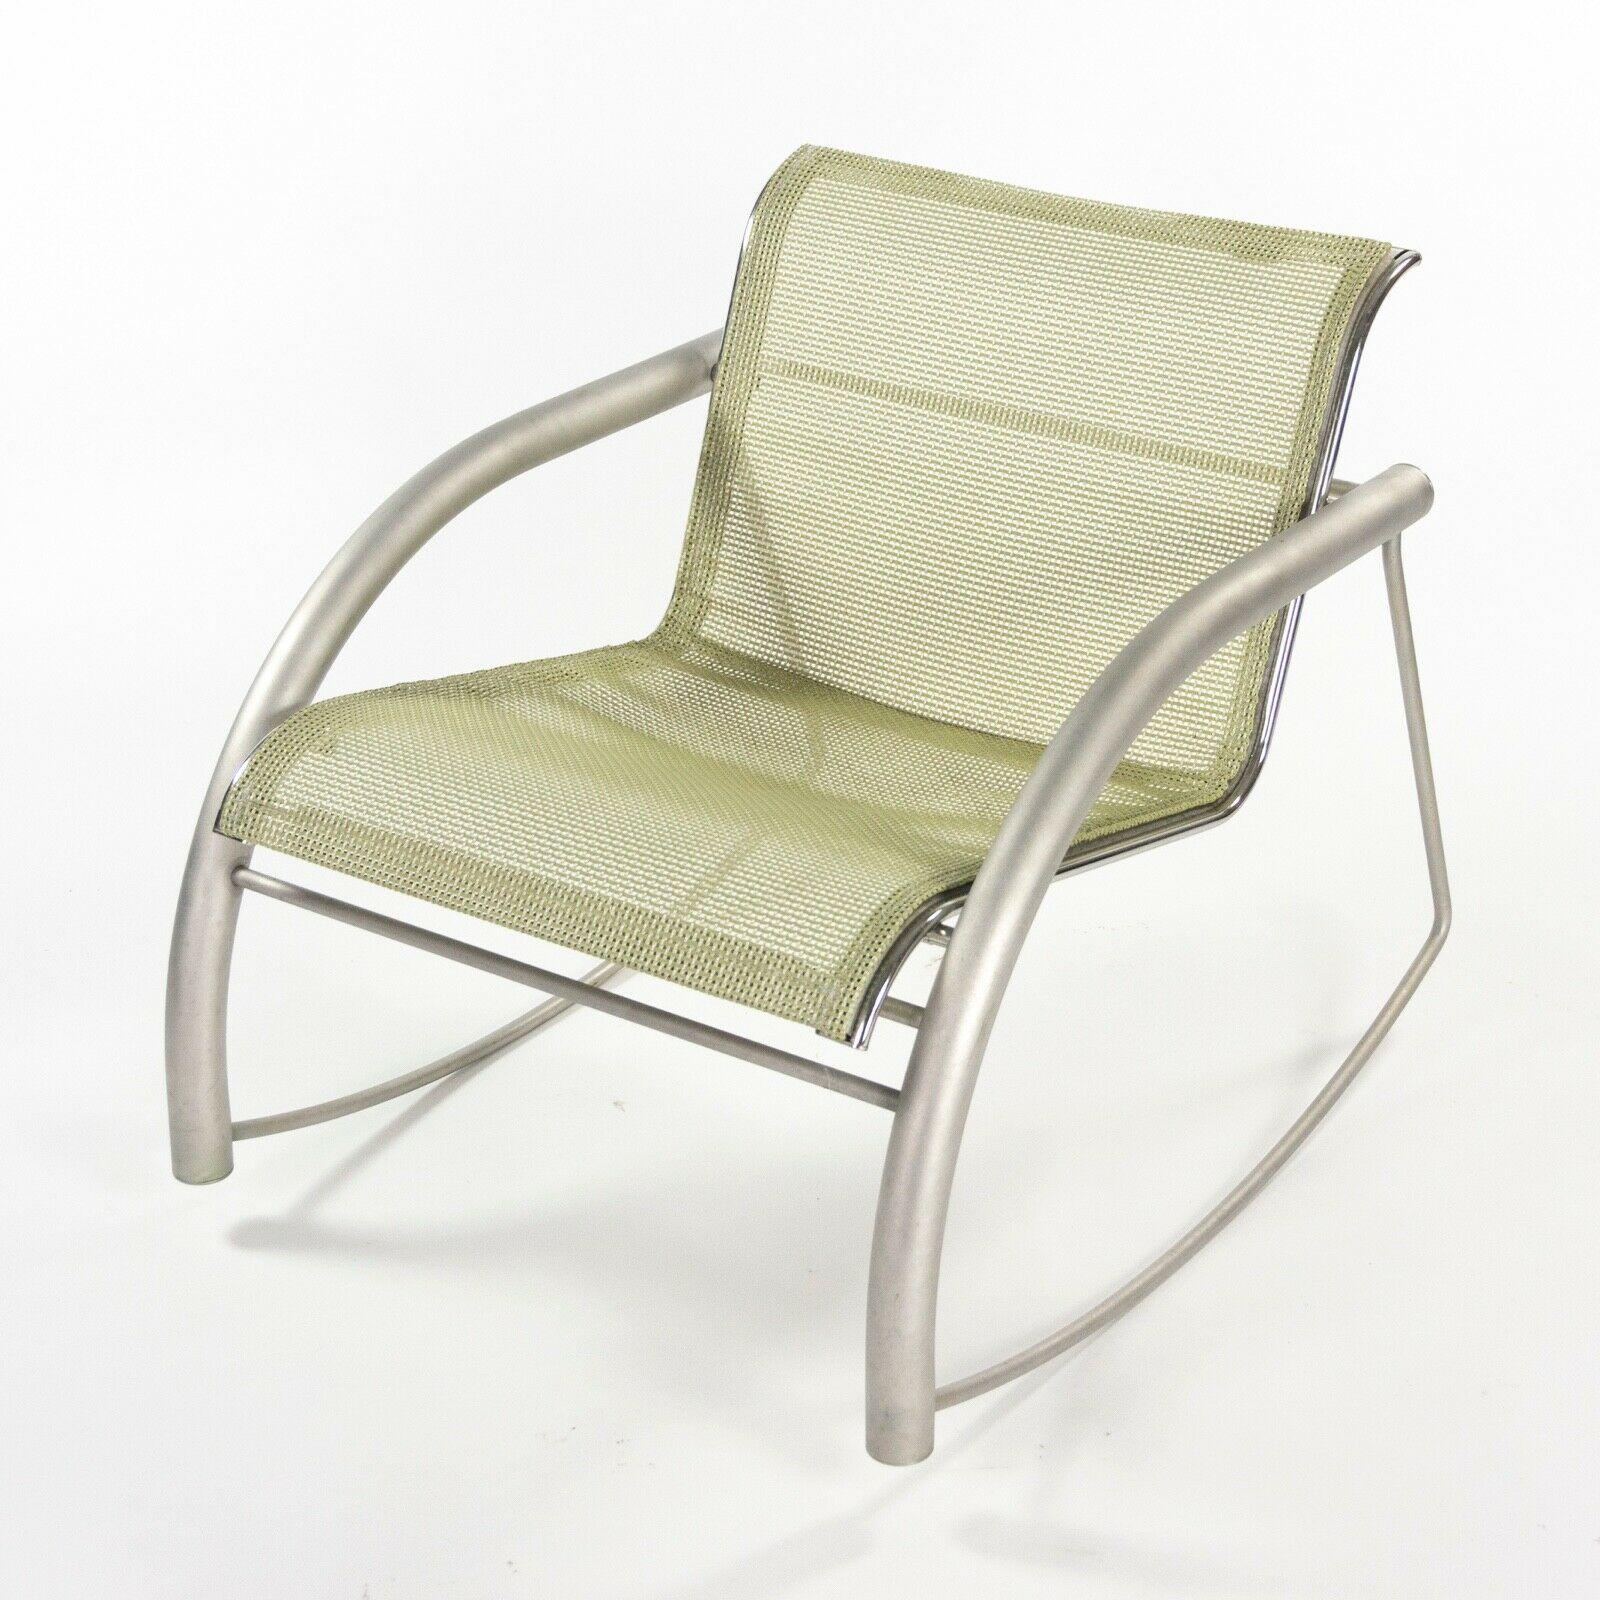 
La vente porte sur un prototype de fauteuil à bascule en acier inoxydable de la Collection Sultz 2002, avec un revêtement en maille. Il s'agit d'un merveilleux et rare exemple d'un rocking-chair de la collection 2002, produit en 2001. Le cadre en